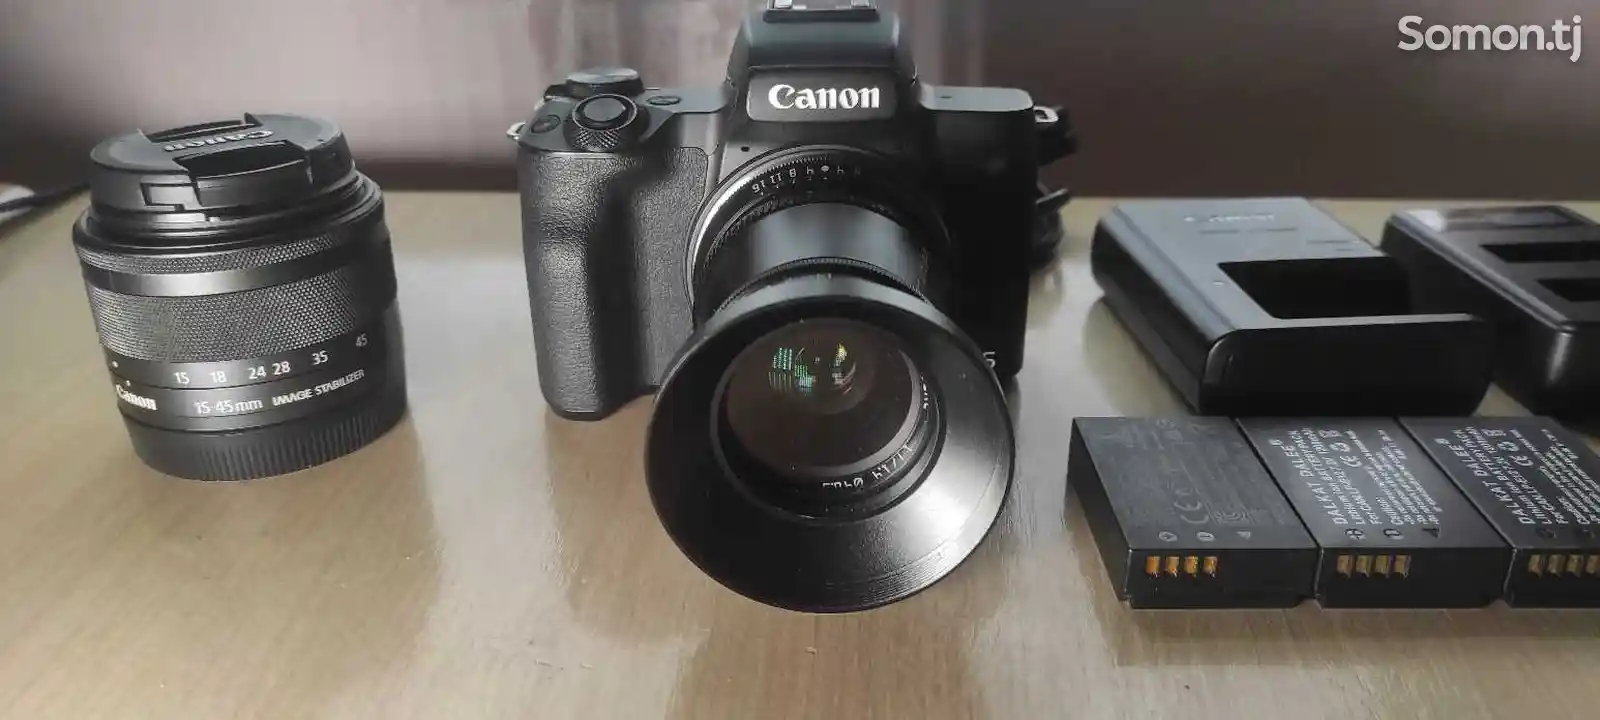 Фотоаппарат Canon M50 + Zhiyun crane plus-4